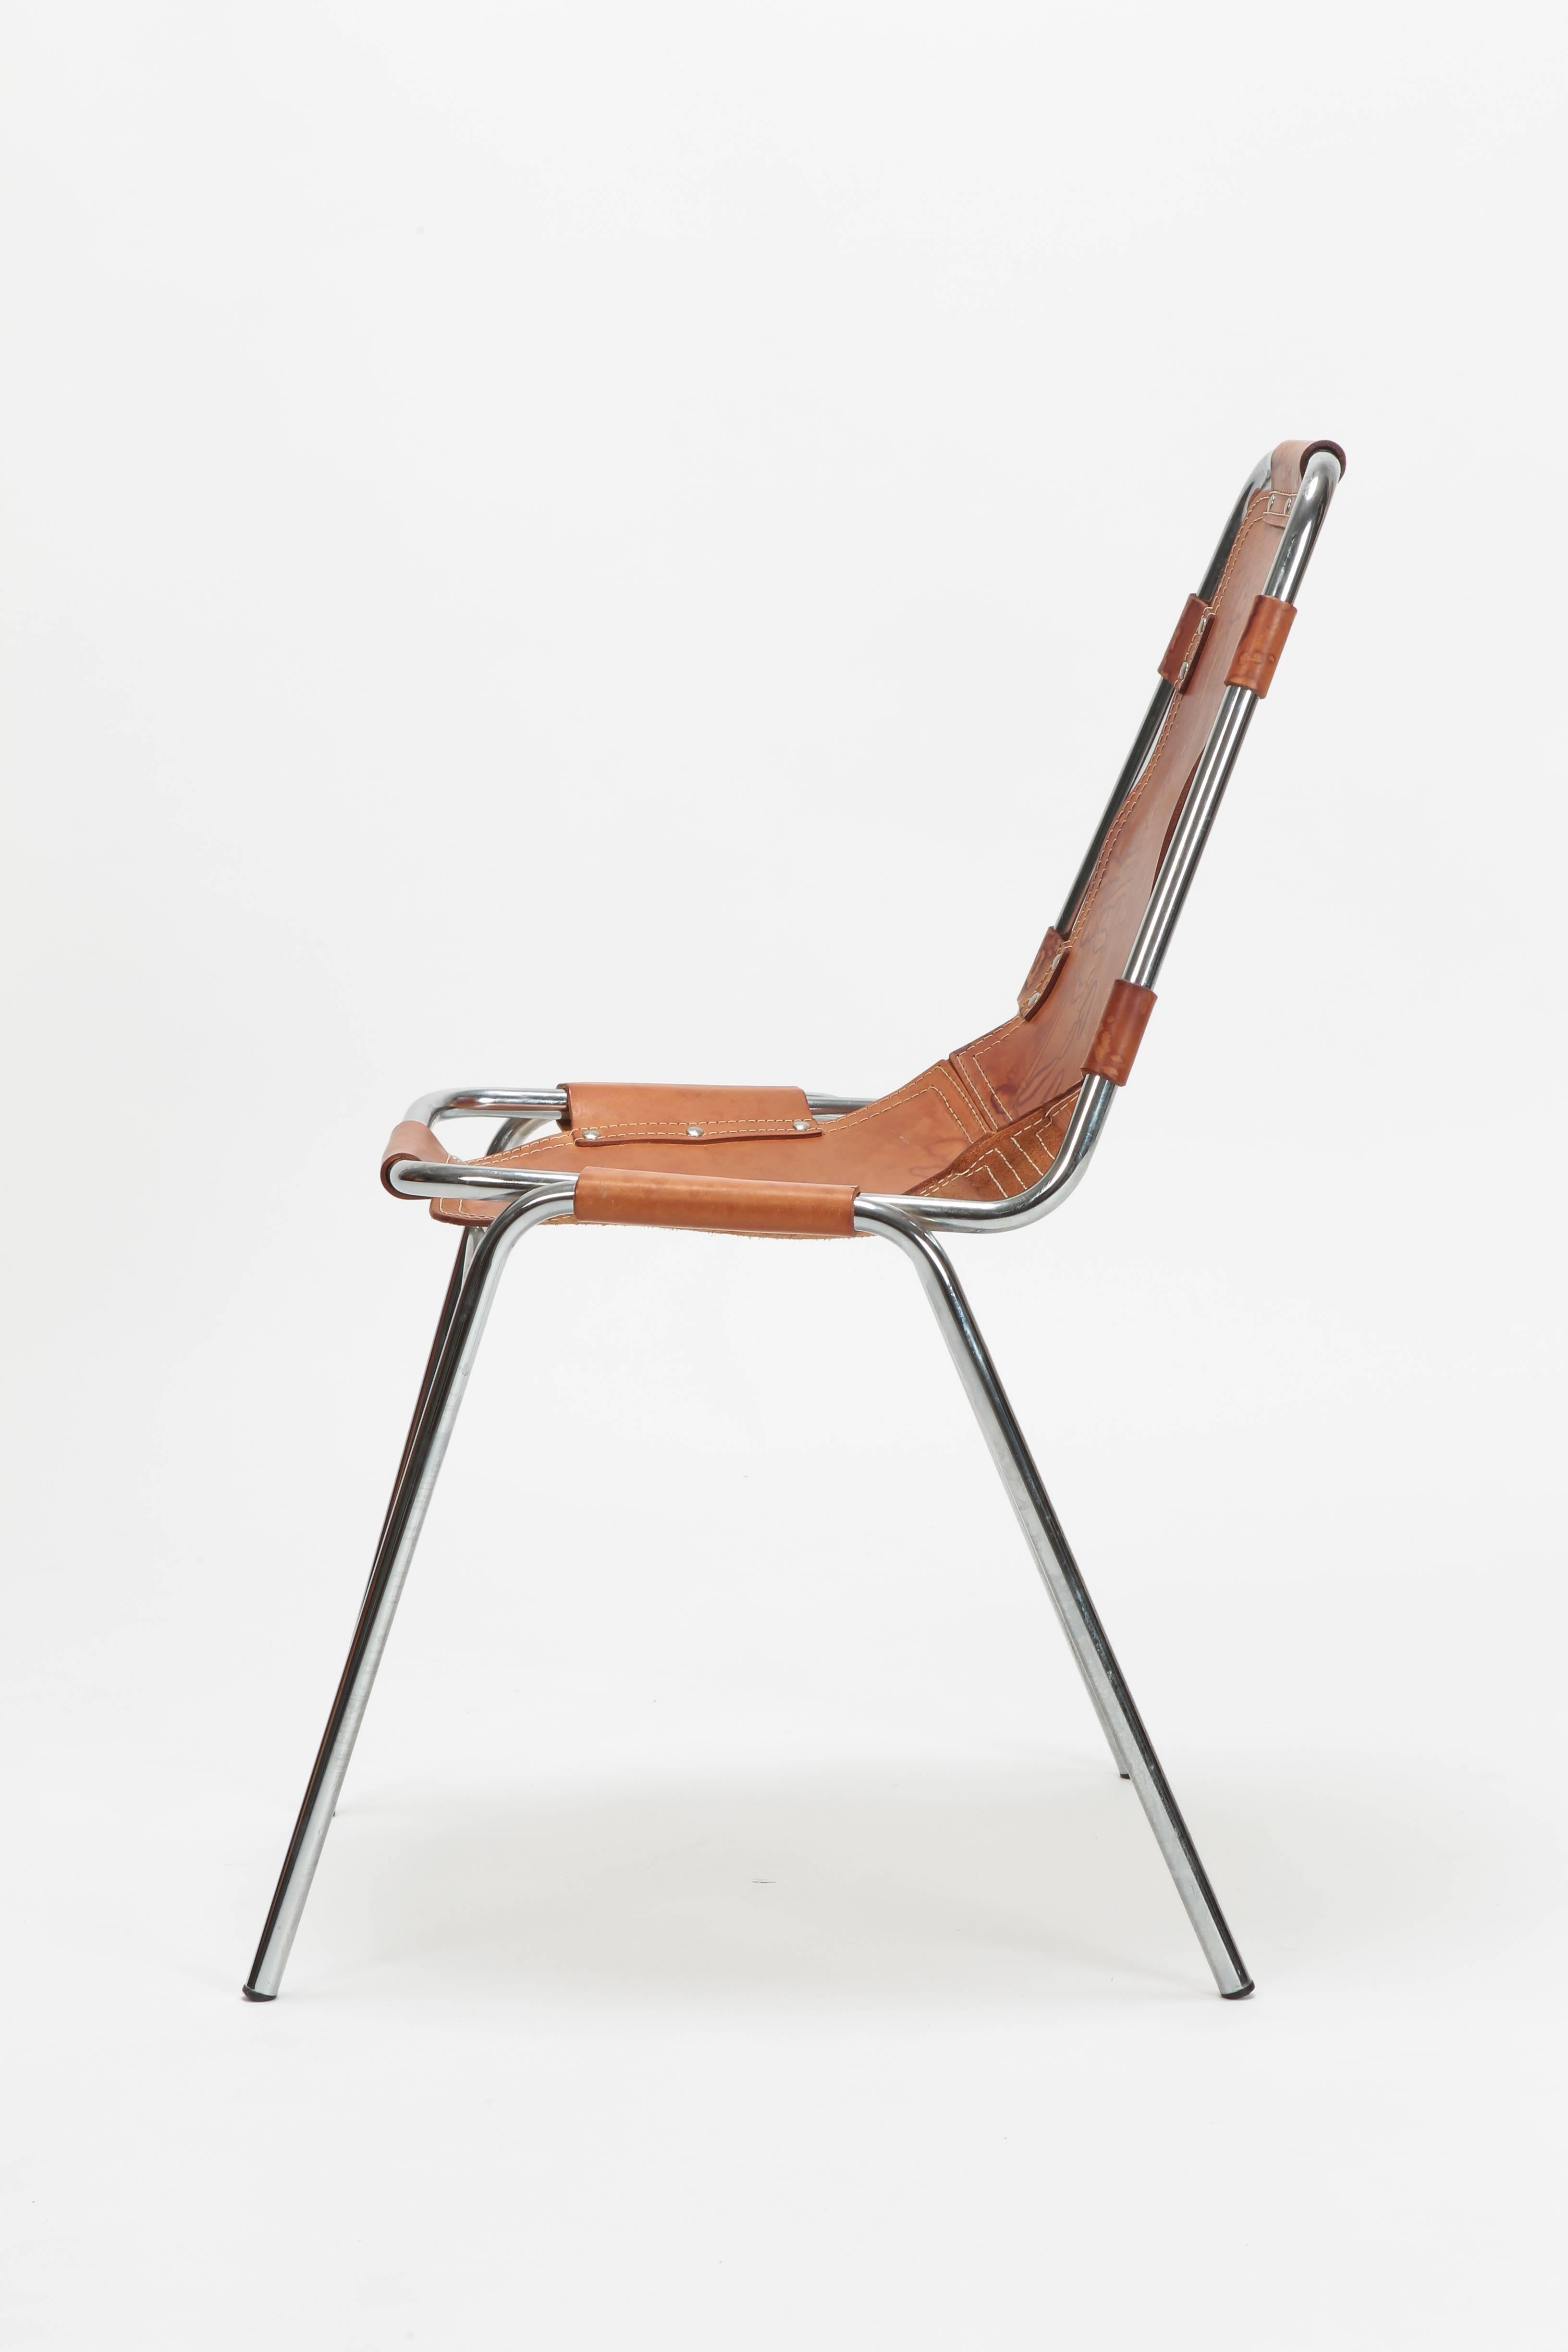 European Charlotte Perriand Chair Les Arc, 1960s